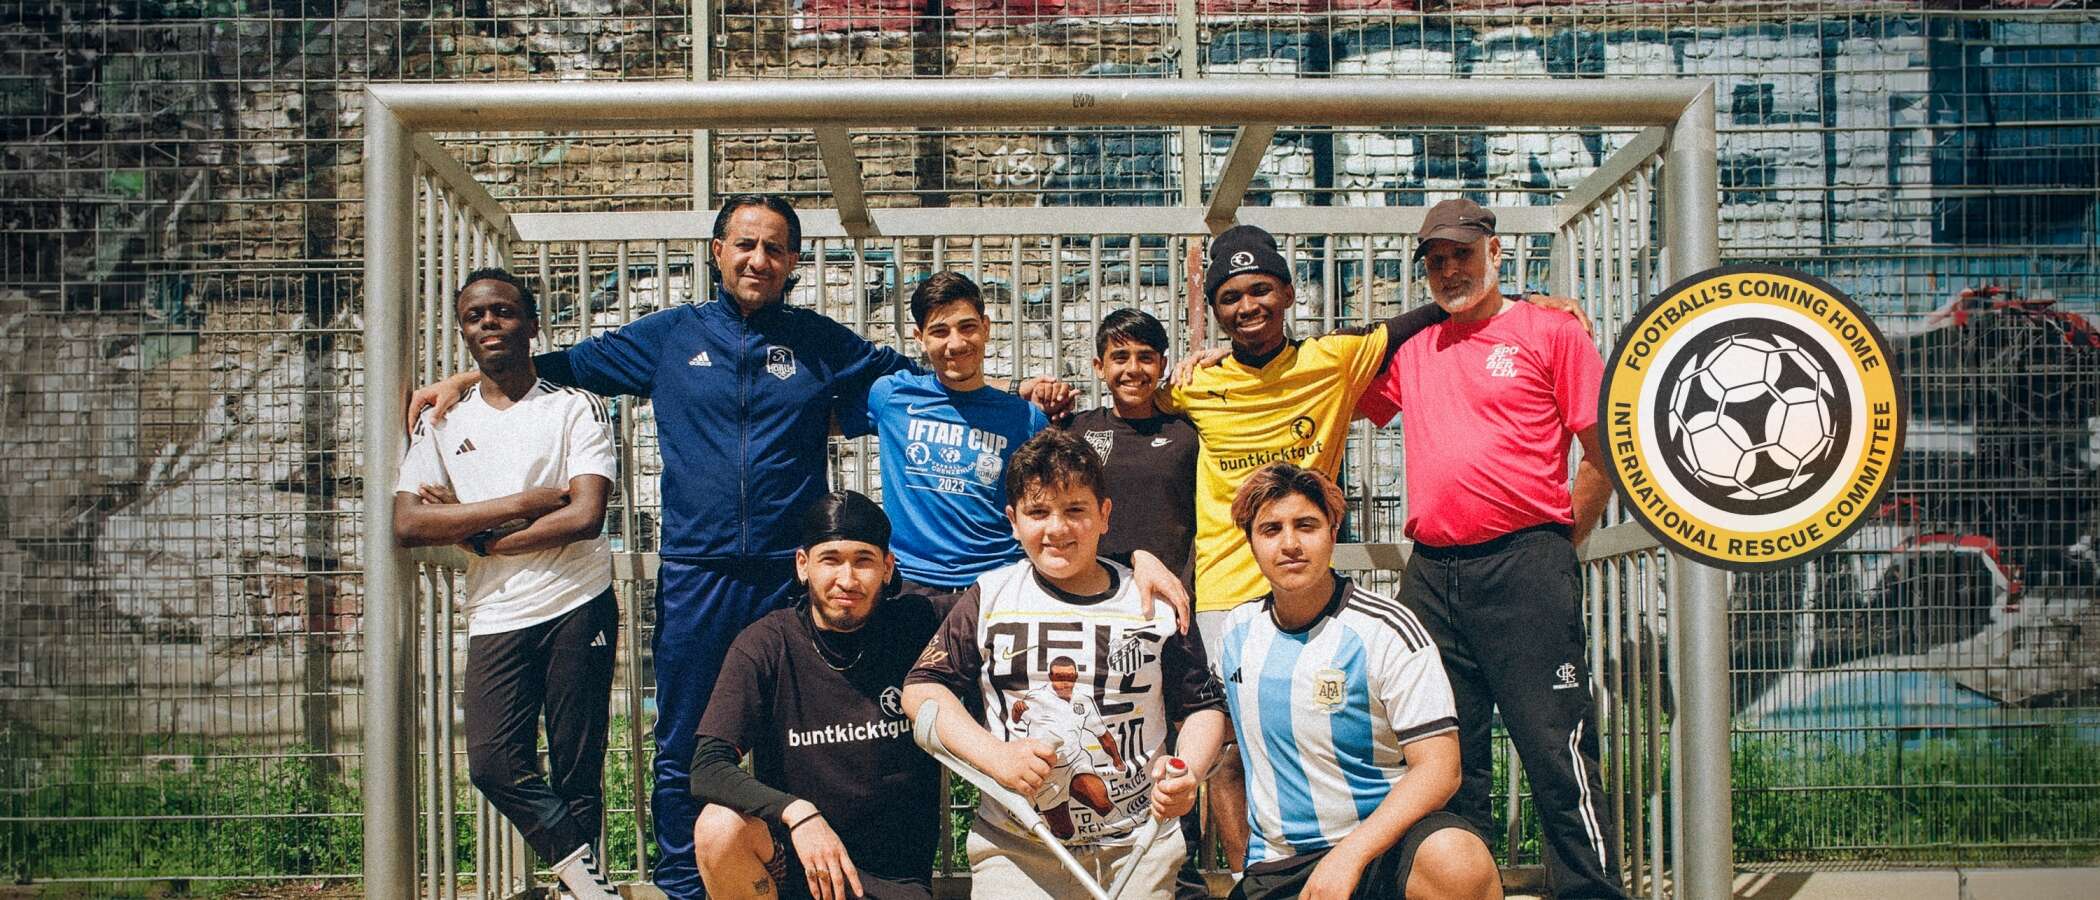 Eine Gruppe von neun Fußballspielern und ihren Trainern steht vor einem Tor auf einem Fußballplatz. Sie lächeln und posieren für das Foto. Rechts unten ist ein Logo mit der Aufschrift 'Football's Coming Home International Rescue Committee' zu sehen.